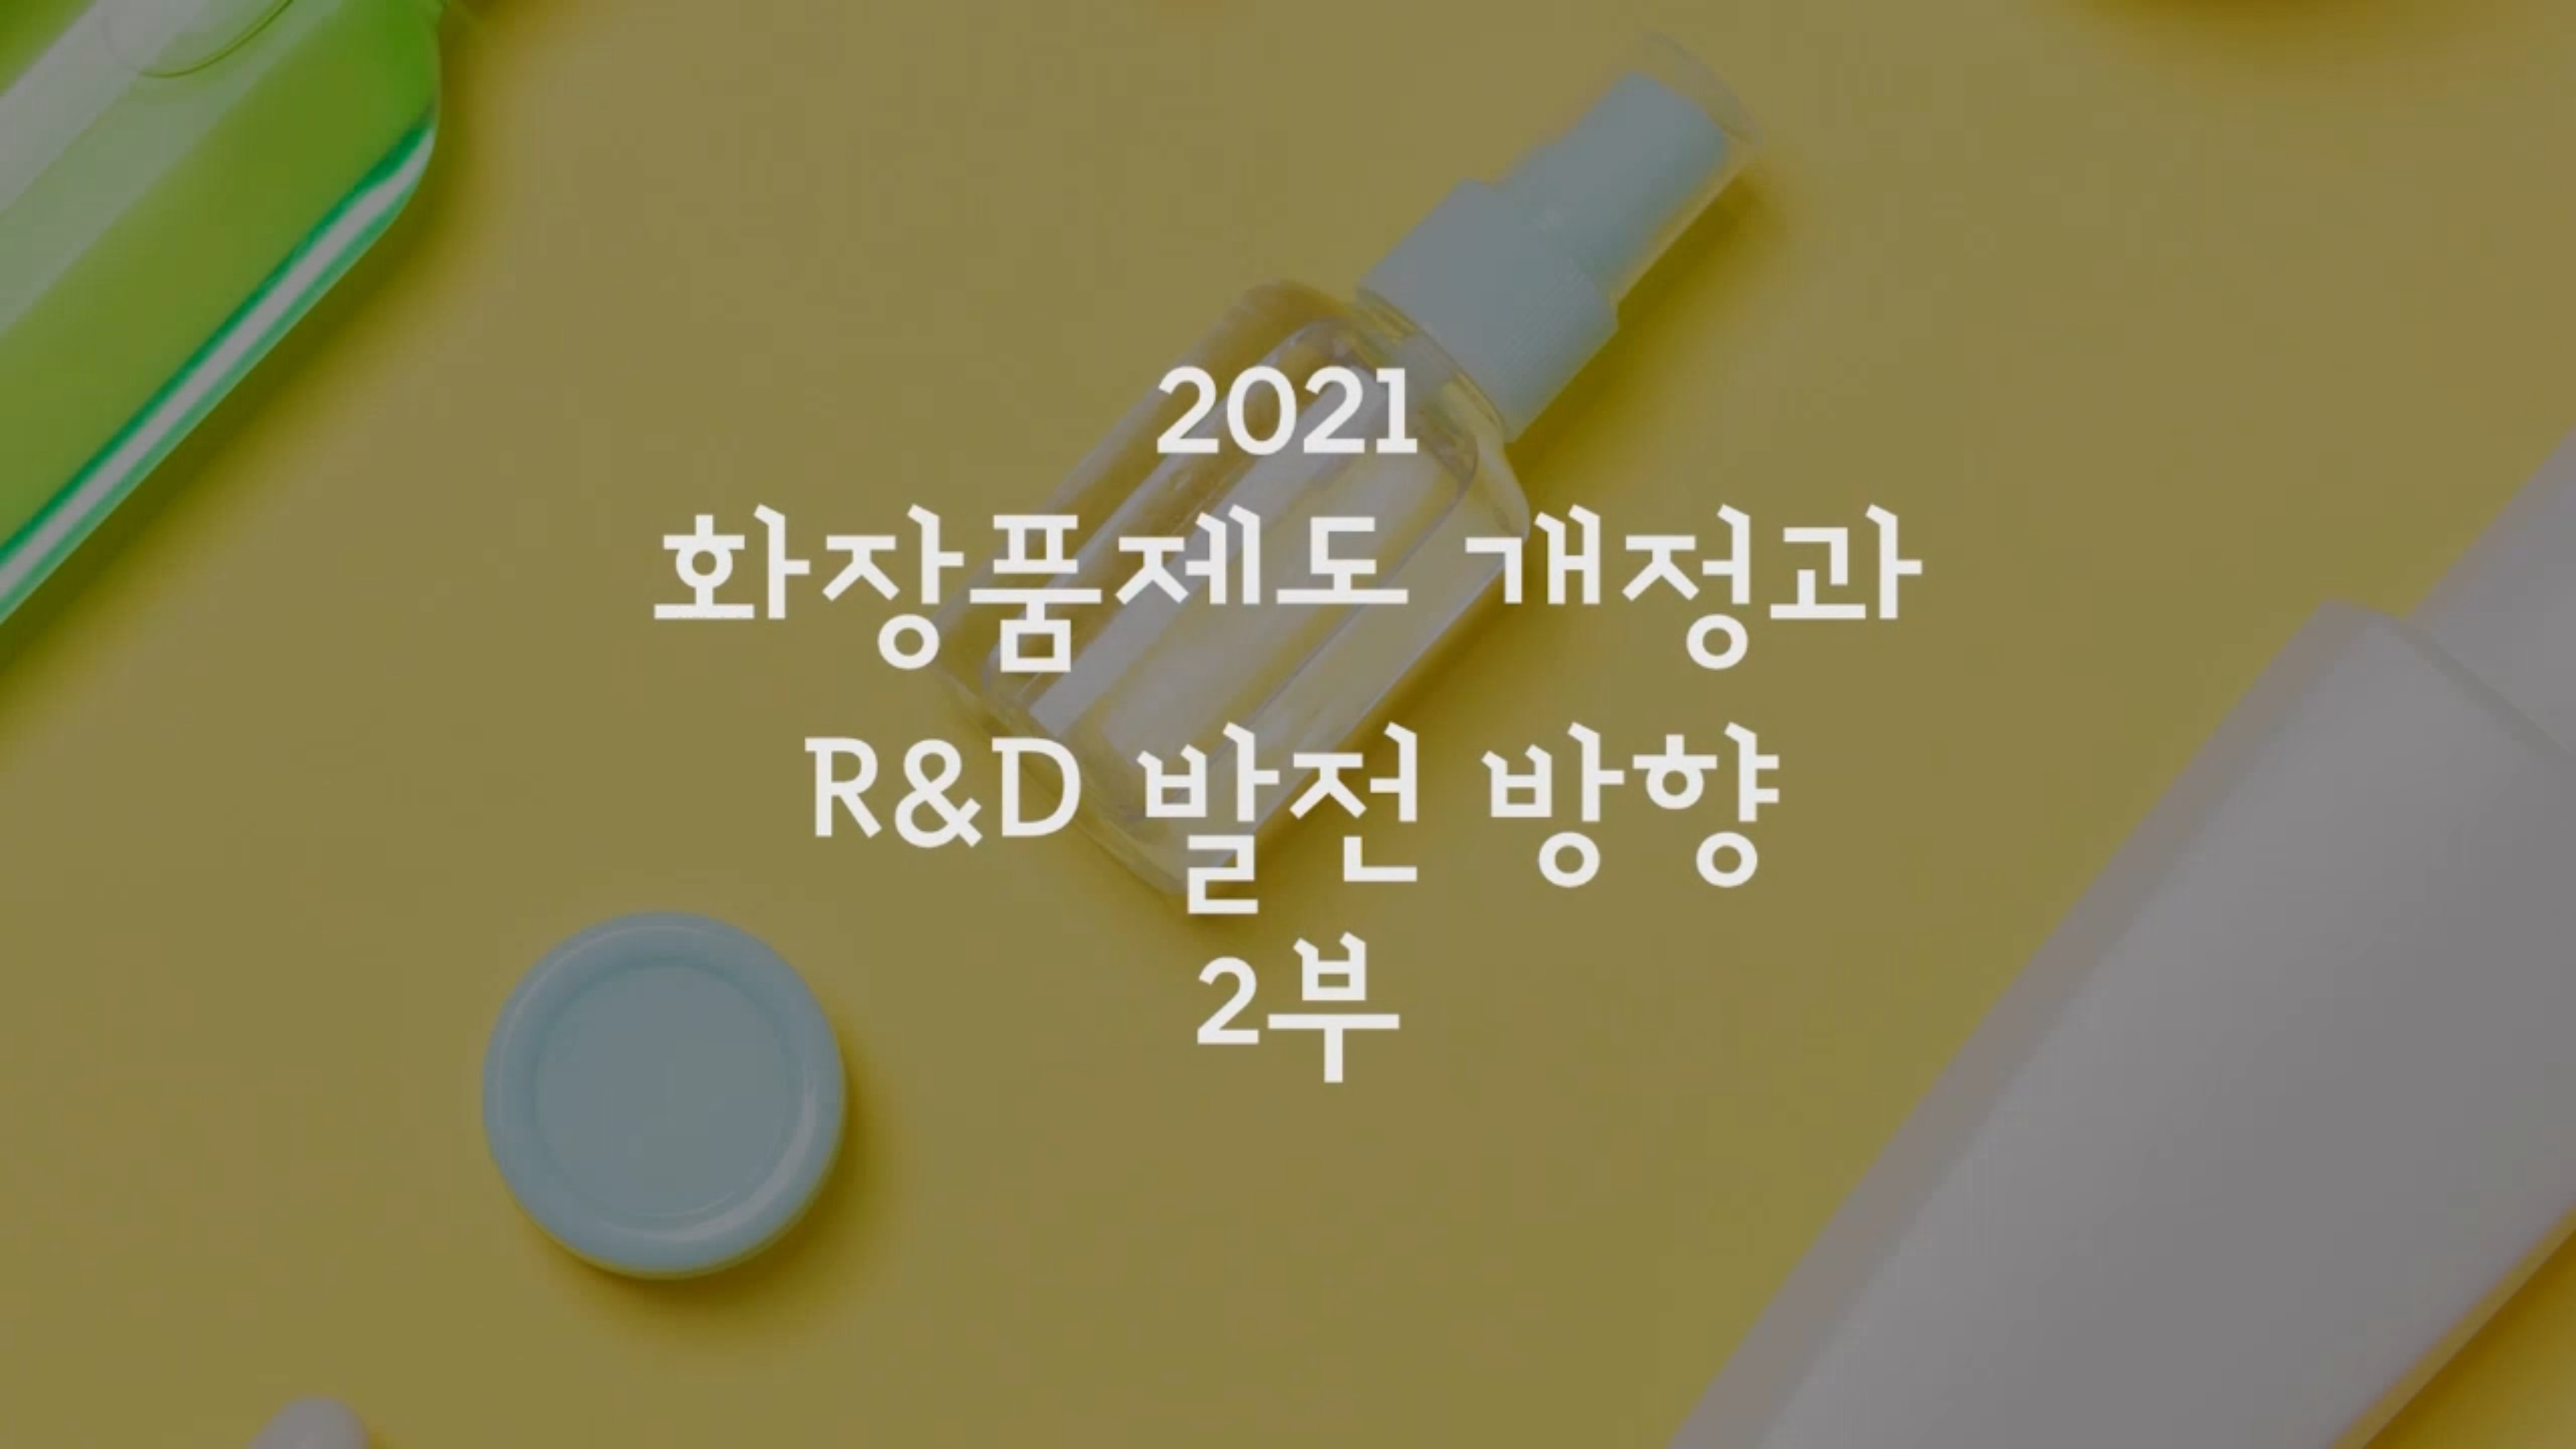 (뷰티 바이오 특강 3차) 2021 화장품제도 개정과 R&D 발전 방향 2부